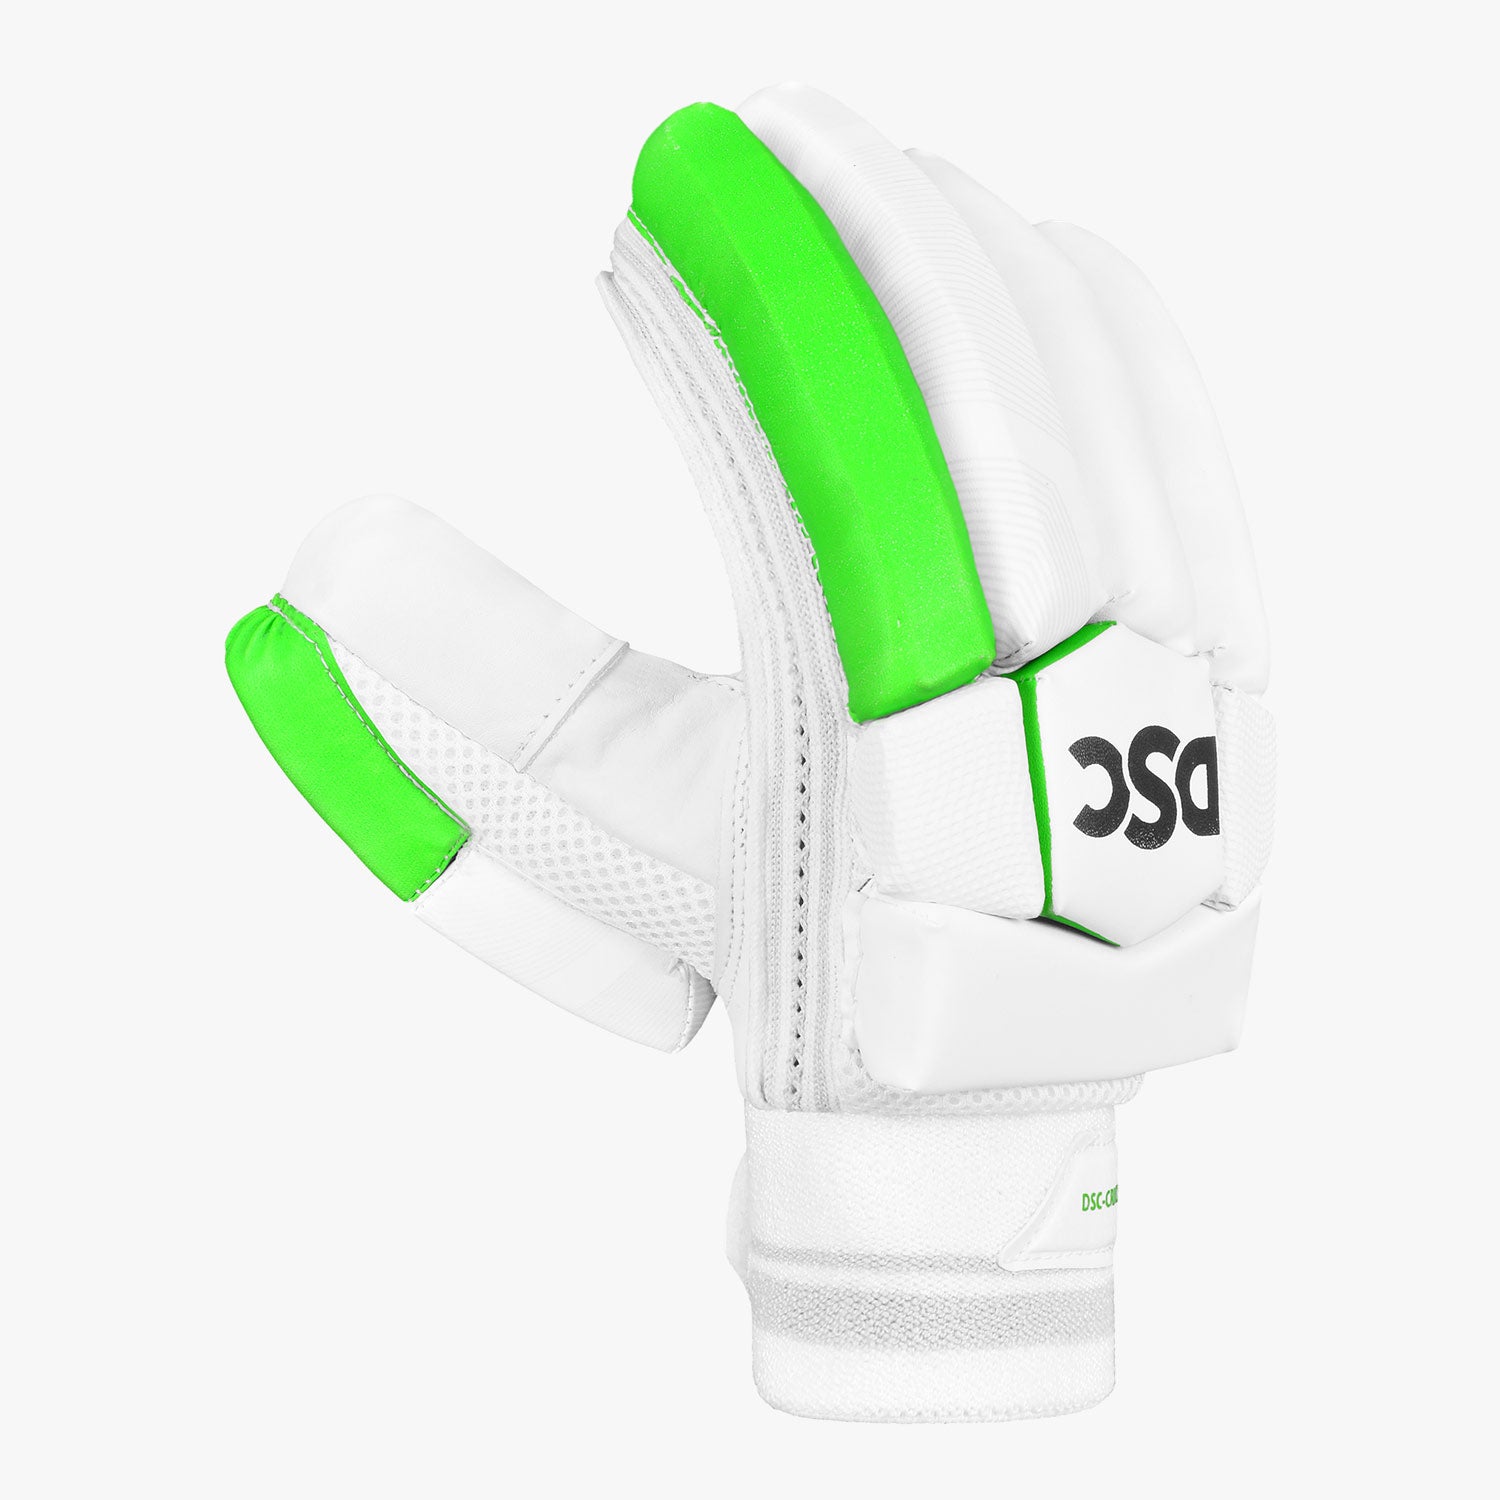 DSC Spliit 5000 Batting Gloves